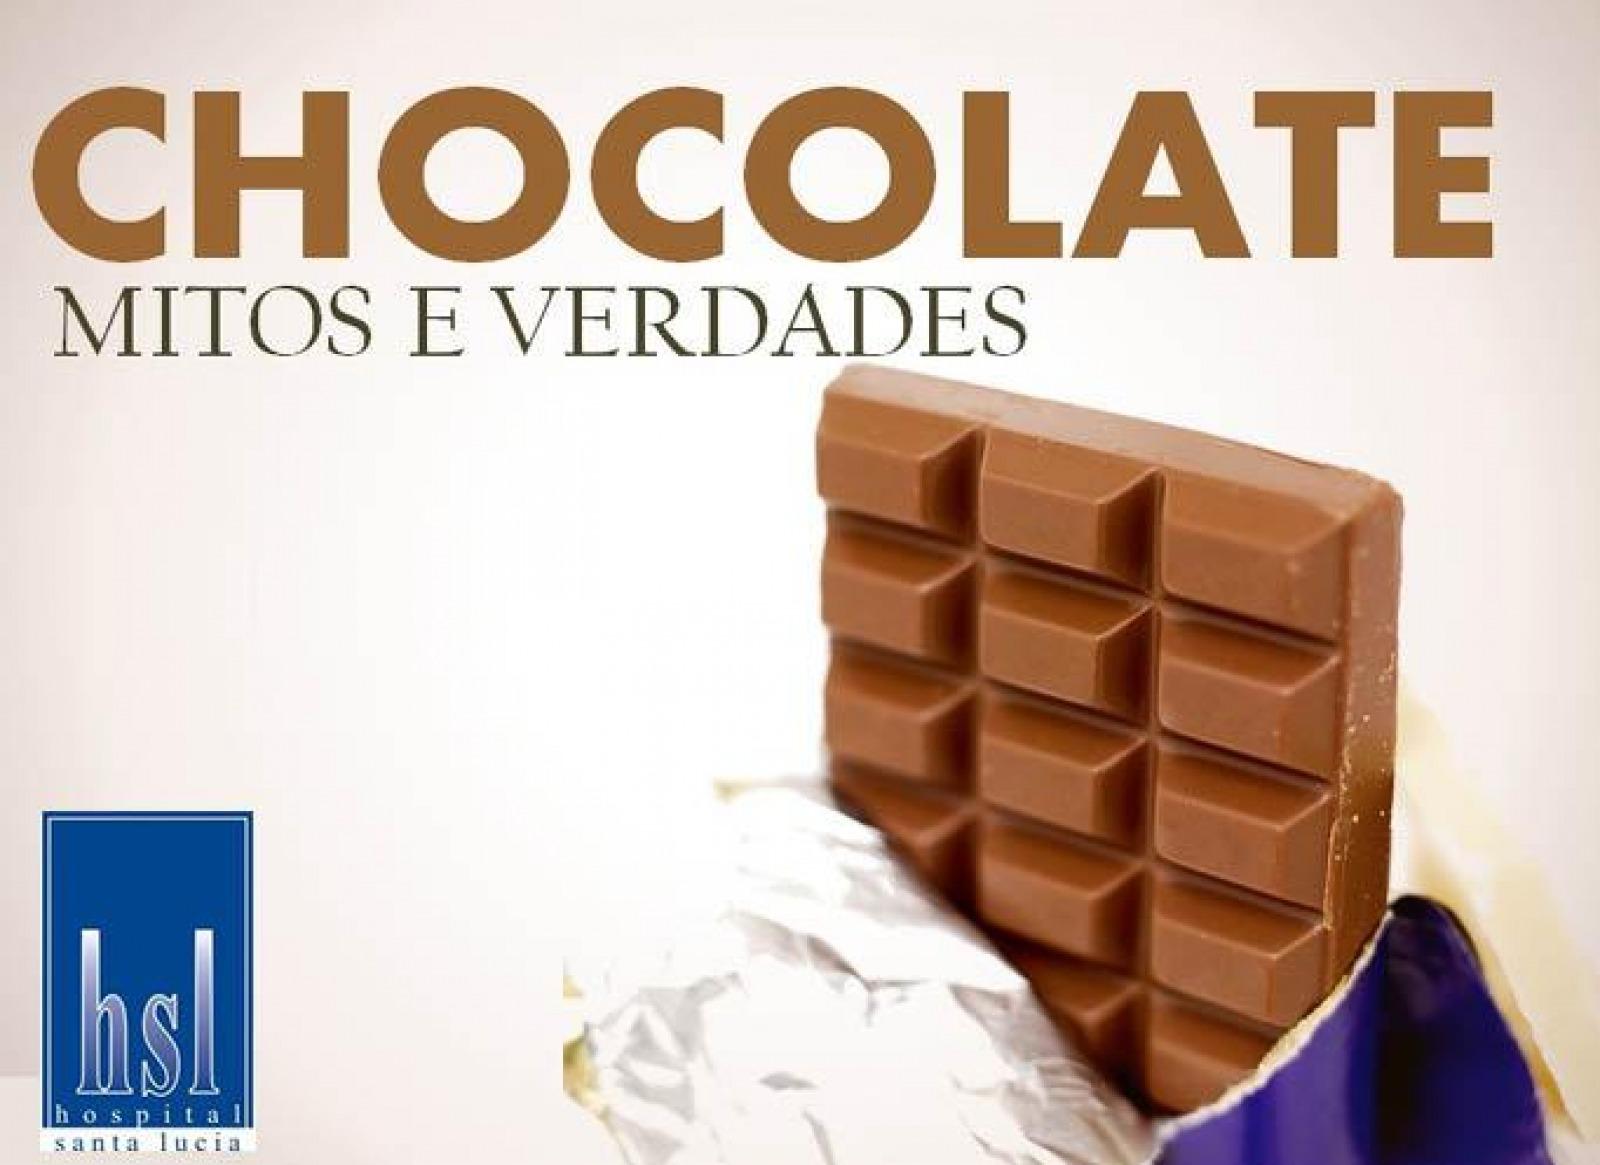 MITOS E VERDADES SOBRE O CHOCOLATE